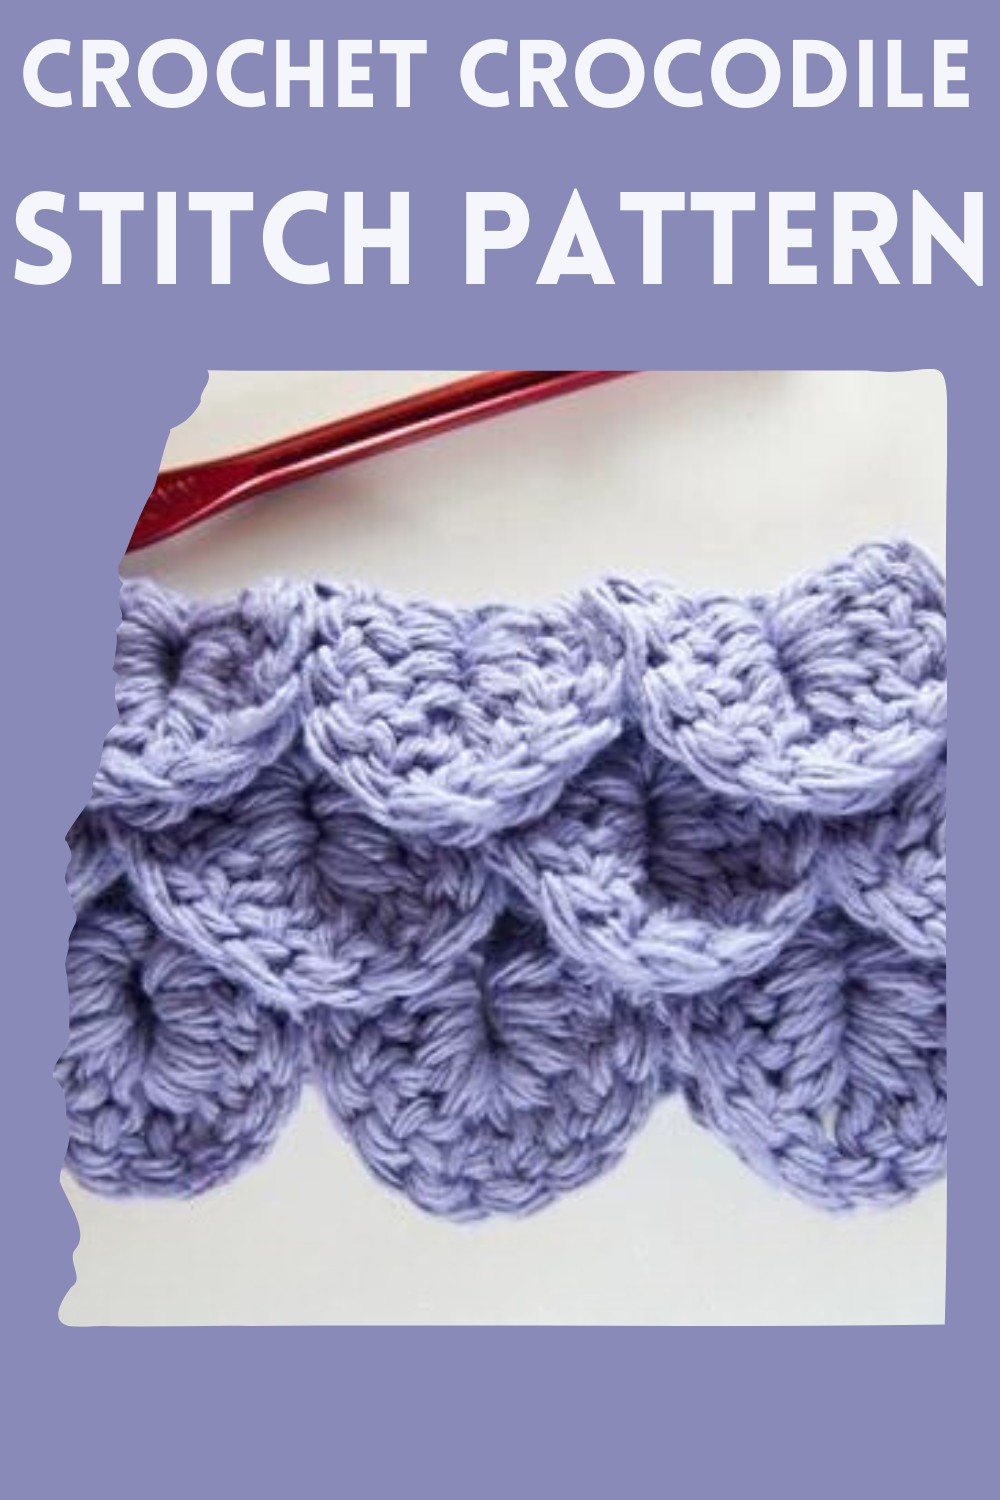 Crochet The Crocodile Stitch Pattern